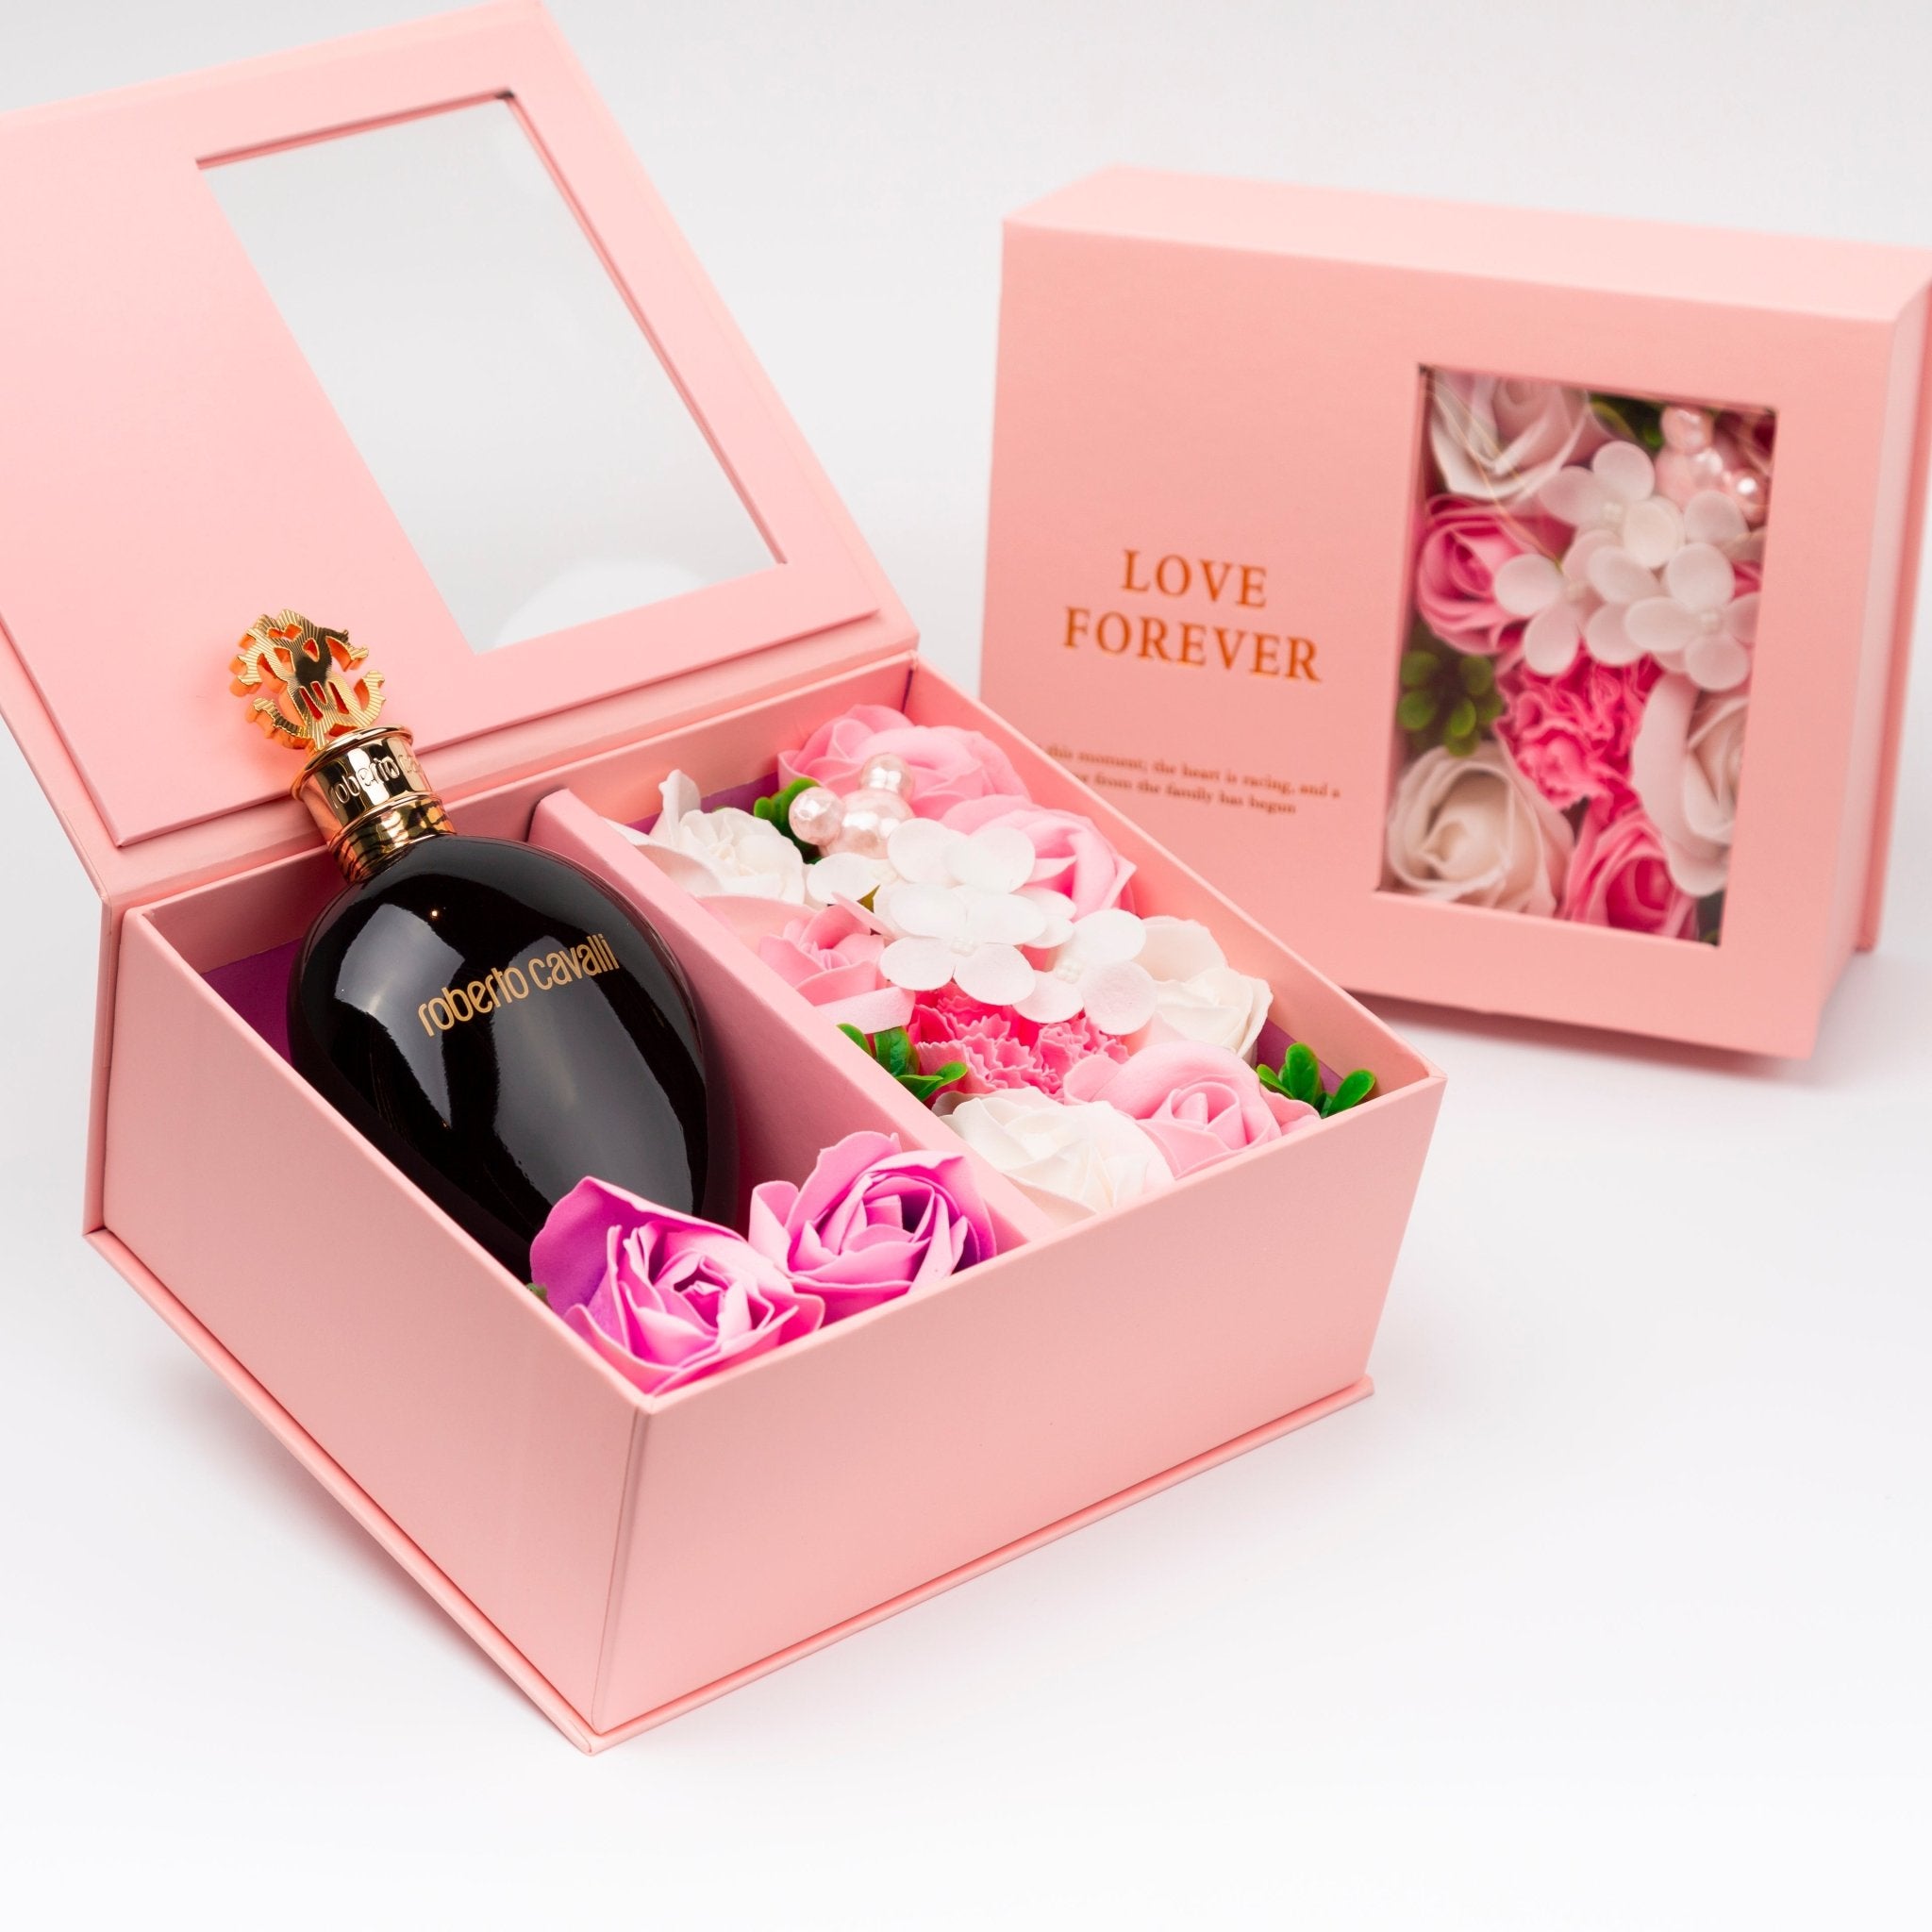 Flower Box - Perfume Gift For Women 19 - #shoFlower Box - Perfume Gift For Women 19p_name#Flower Box - Perfume Gift For Women 19Gift Boxes & TinsTakreemTakreem.joWomenPerfumeFlower Box - Perfume Gift For Women 19 - Takreem.jo